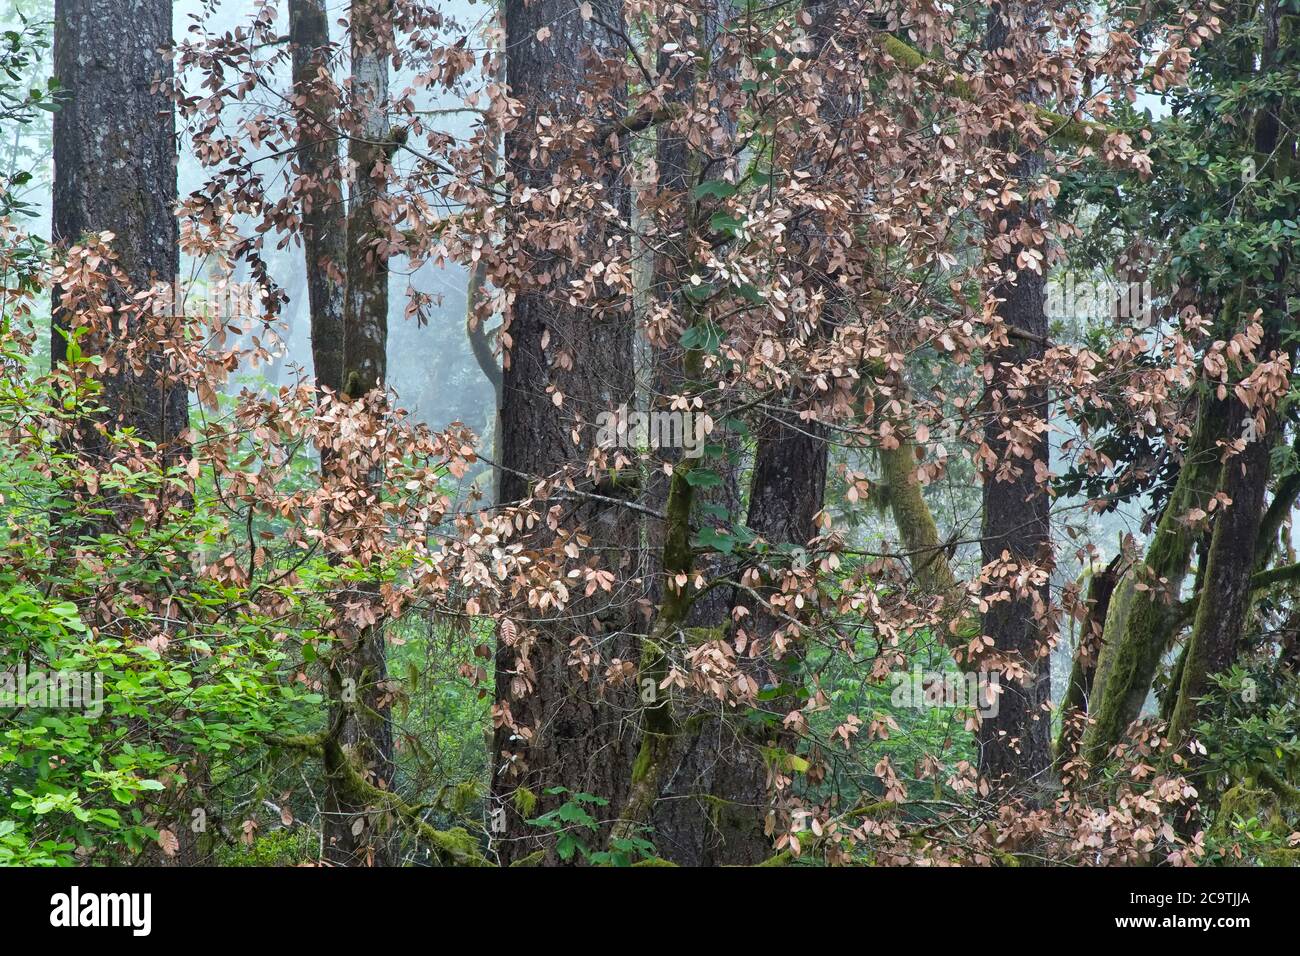 La muerte súbita del roble (SOD) es una enfermedad de los árboles 'Quercus vislizenii' de Live & Tan Oak causada por un patógeno invasor de planta 'Phytophthora ramorum'. Foto de stock